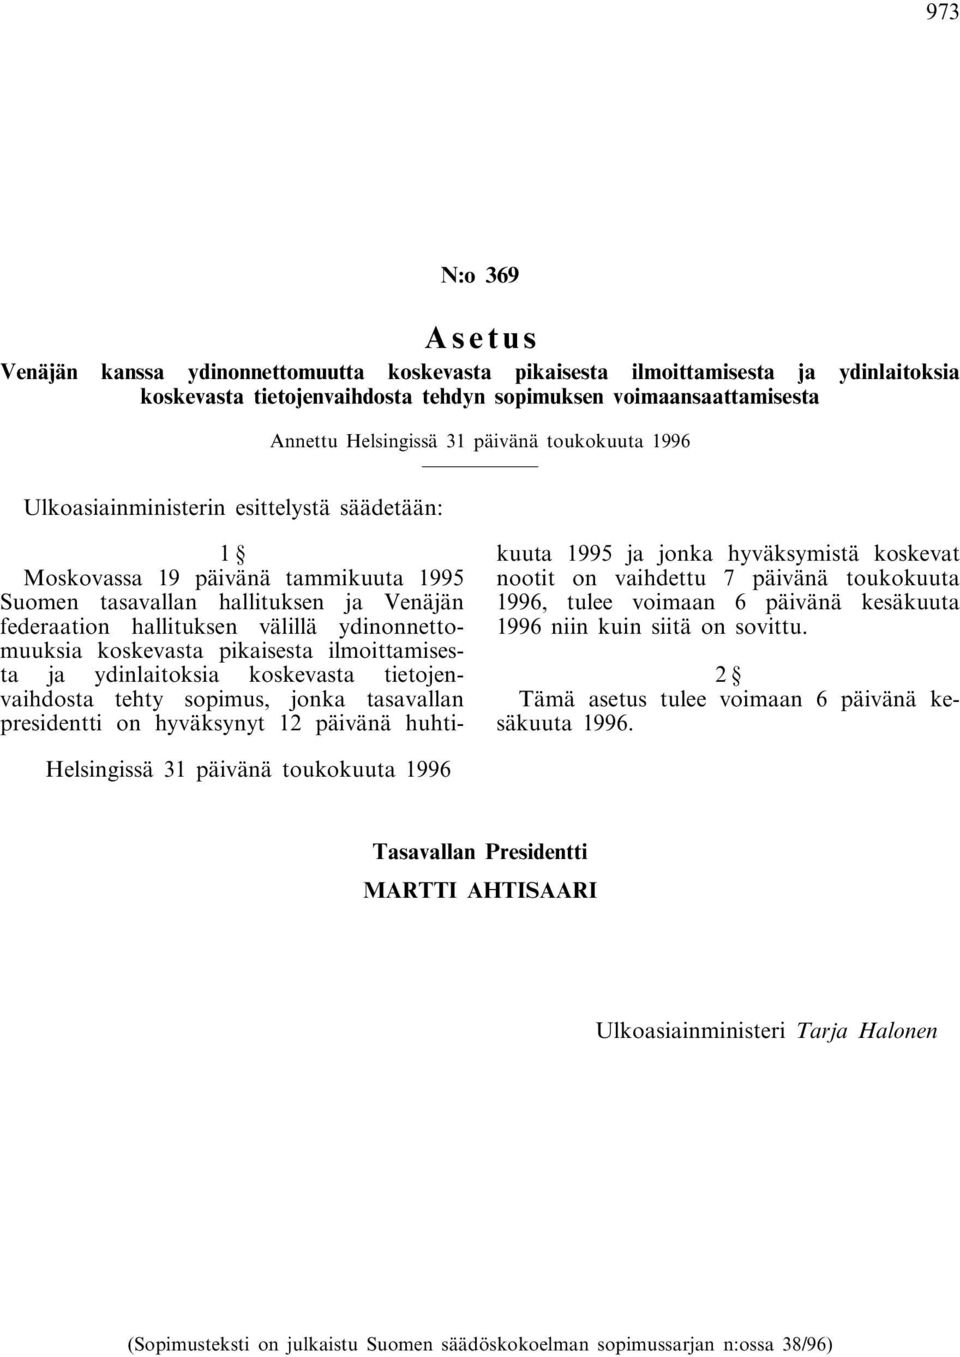 koskevasta pikaisesta ilmoittamisesta ja ydinlaitoksia koskevasta tietojenvaihdosta tehty sopimus, jonka tasavallan presidentti on hyväksynyt 12 päivänä huhtikuuta 1995 ja jonka hyväksymistä koskevat